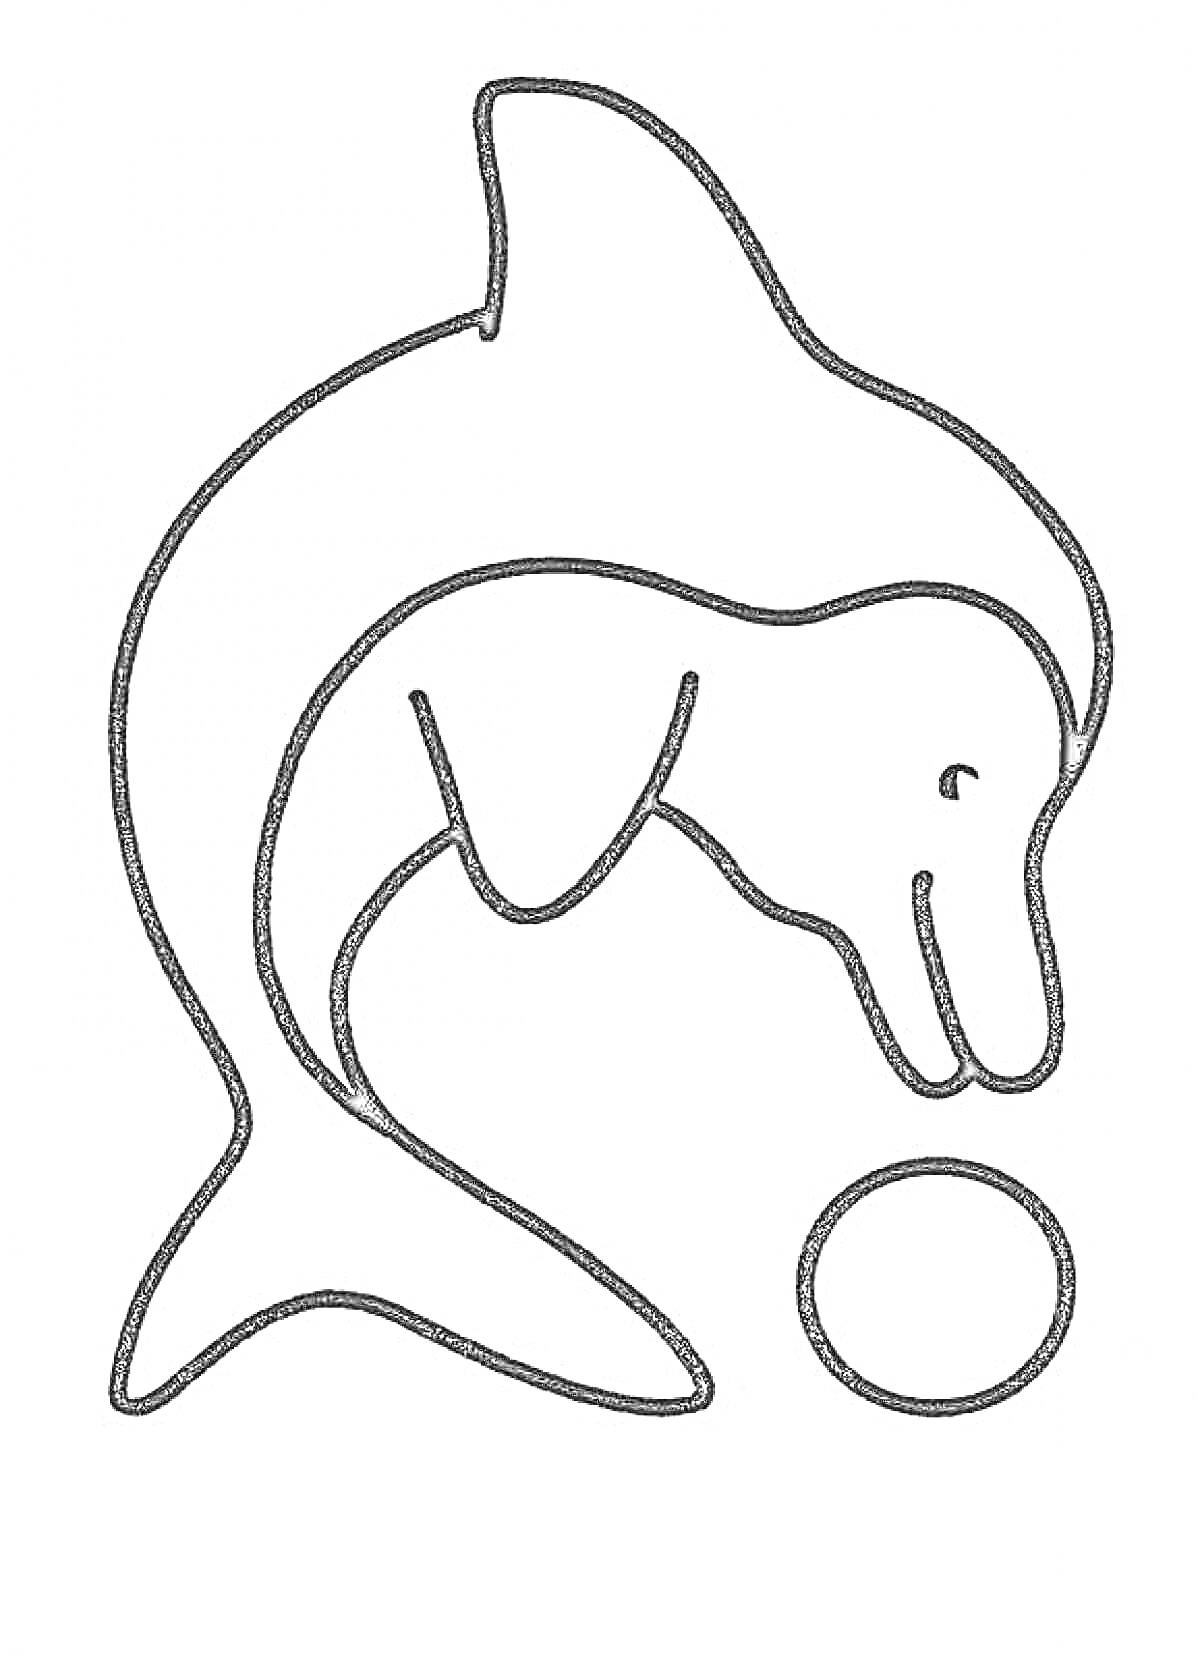 Раскраска Дельфин с мячом